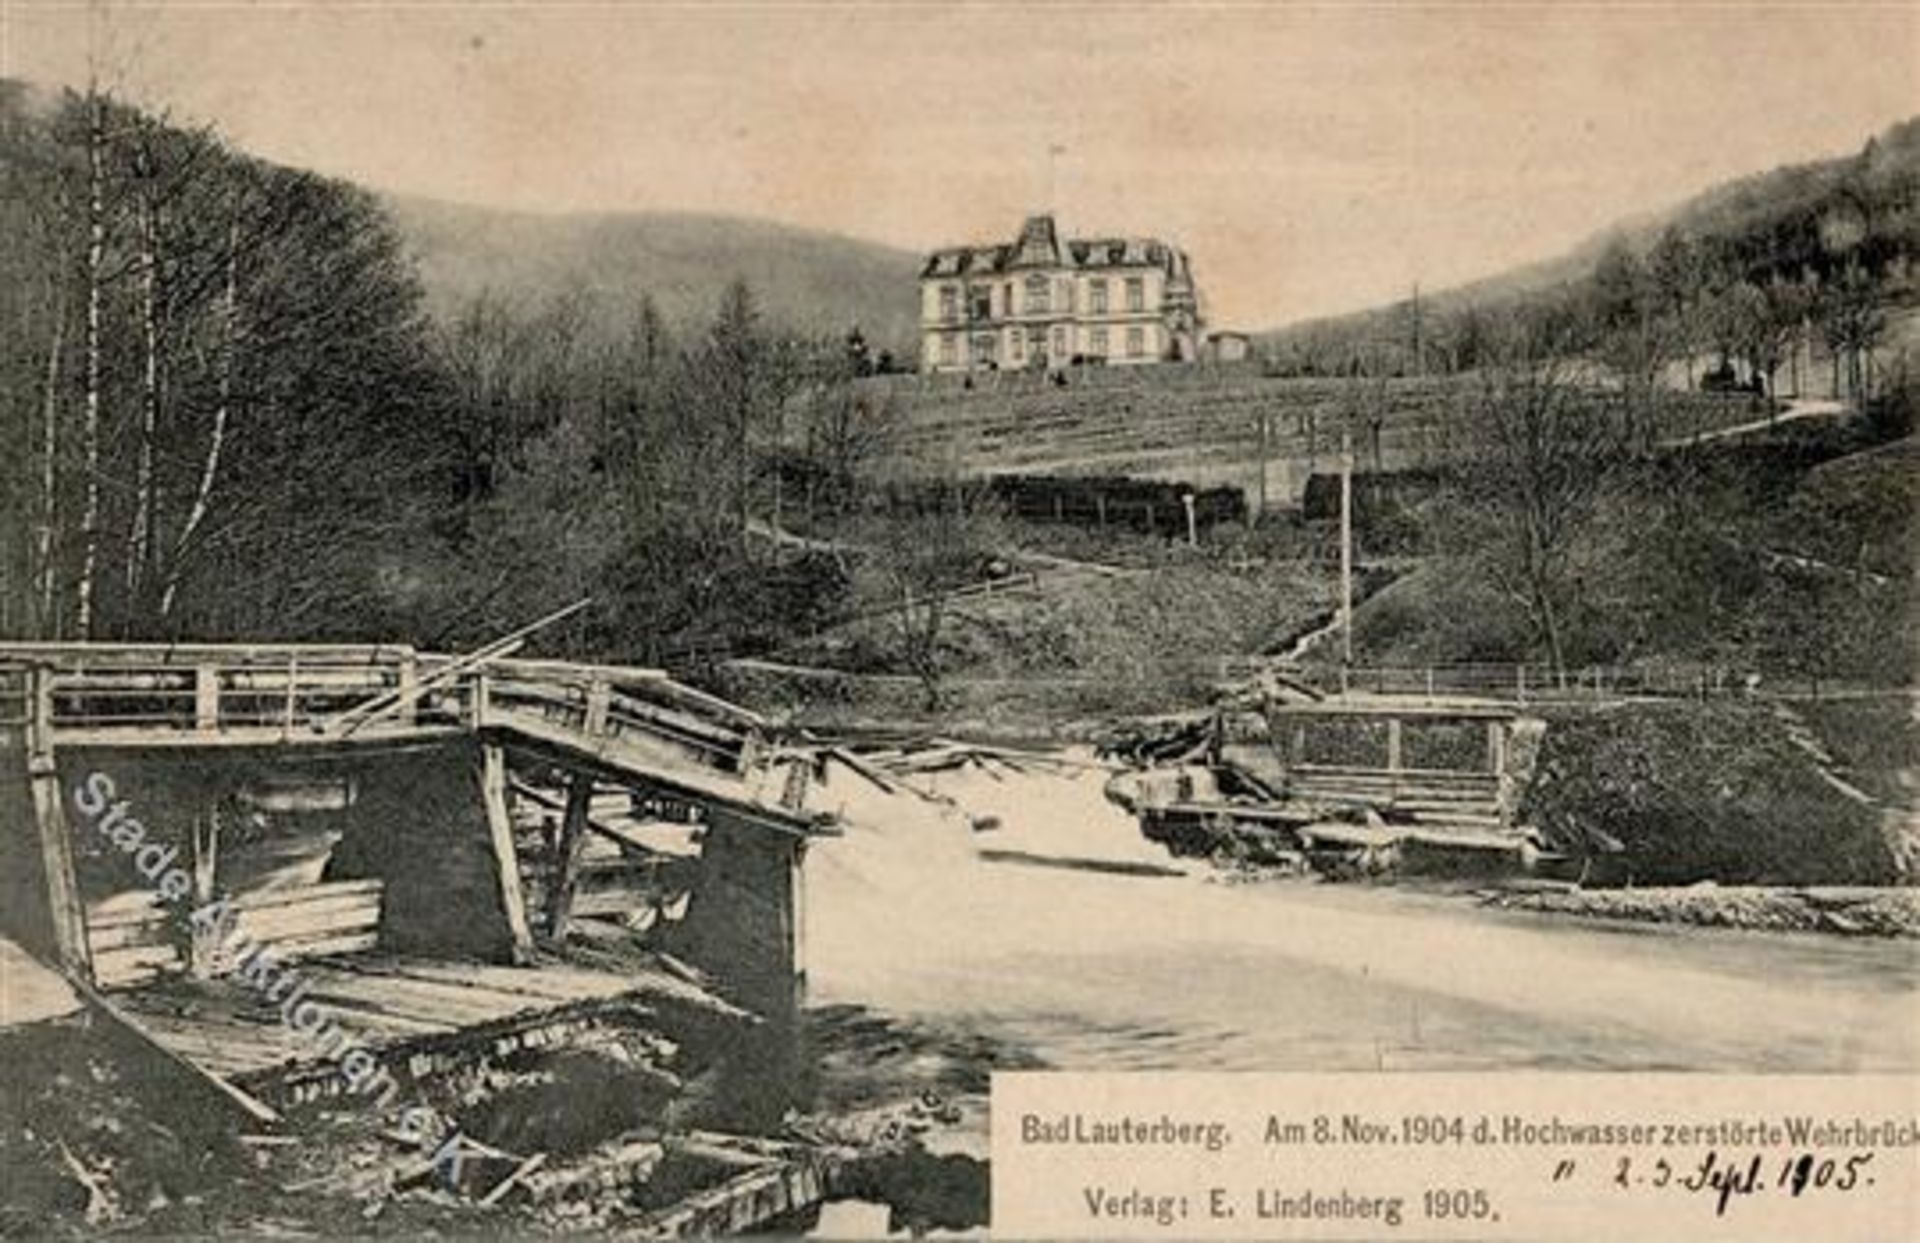 Bad Lauterberg (3422) Am 8. November 1904 die Hochwasser zerstörte Wehrbrücke IDieses Los wird in